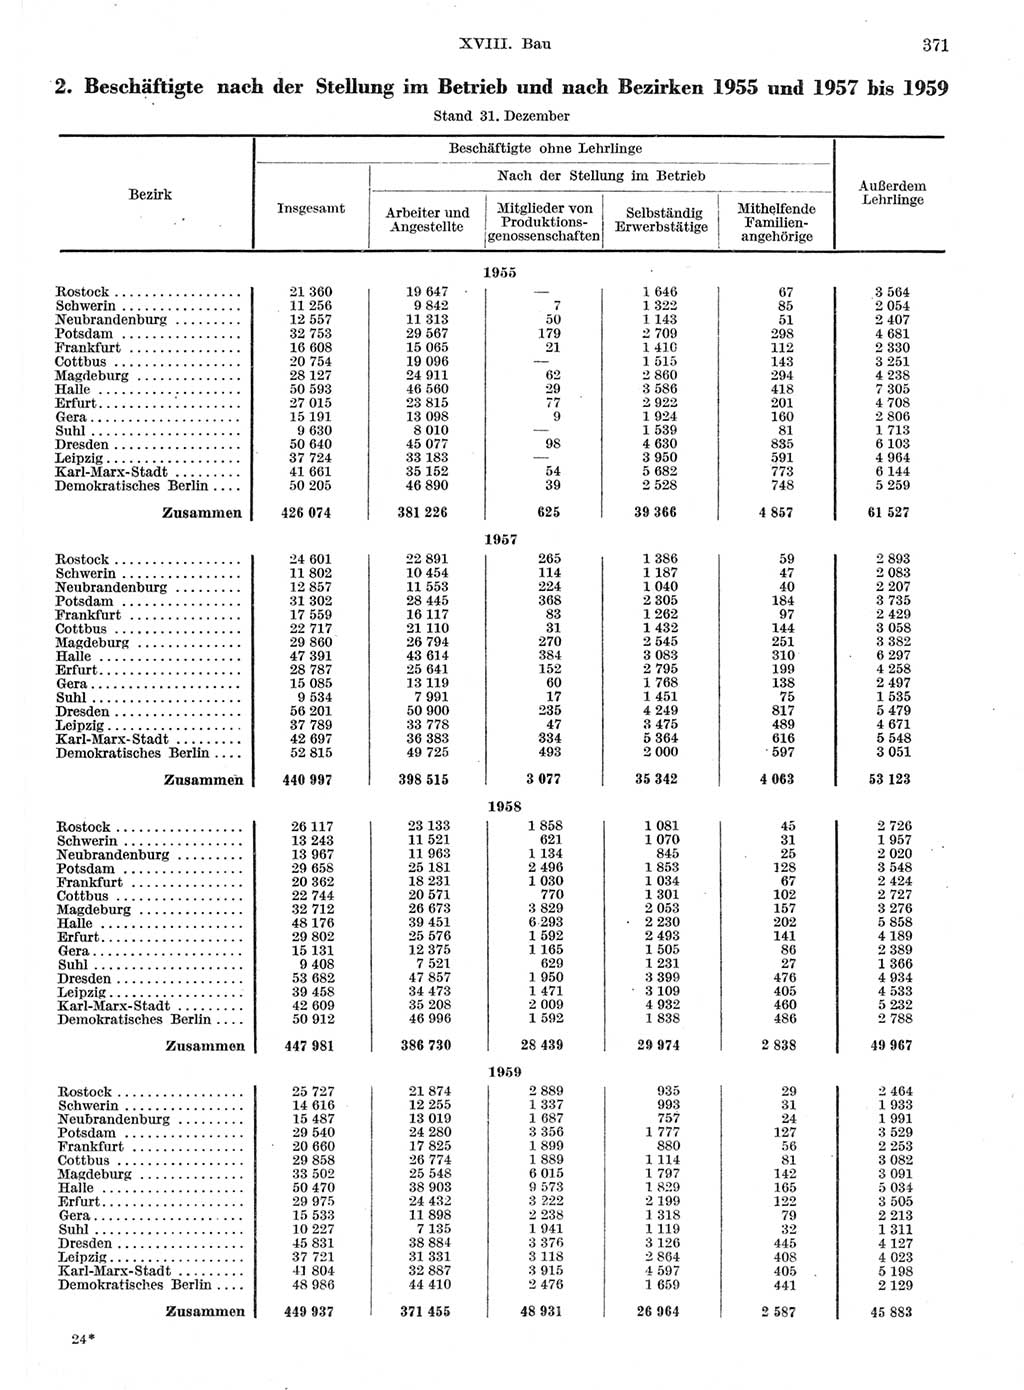 Statistisches Jahrbuch der Deutschen Demokratischen Republik (DDR) 1959, Seite 371 (Stat. Jb. DDR 1959, S. 371)